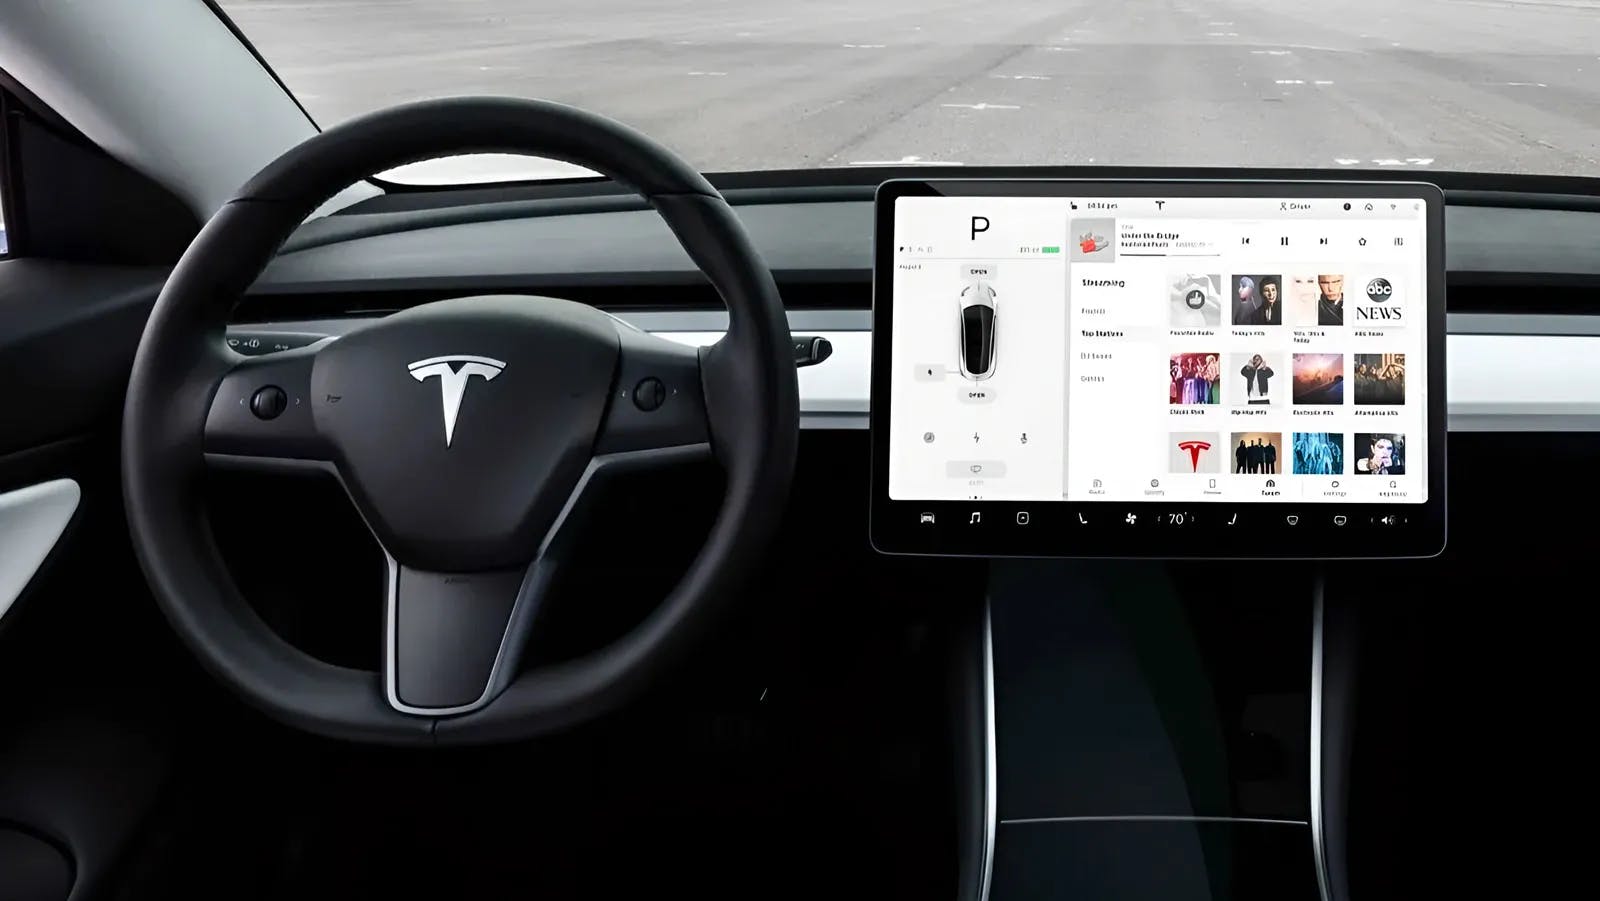 Tesla's User Interface